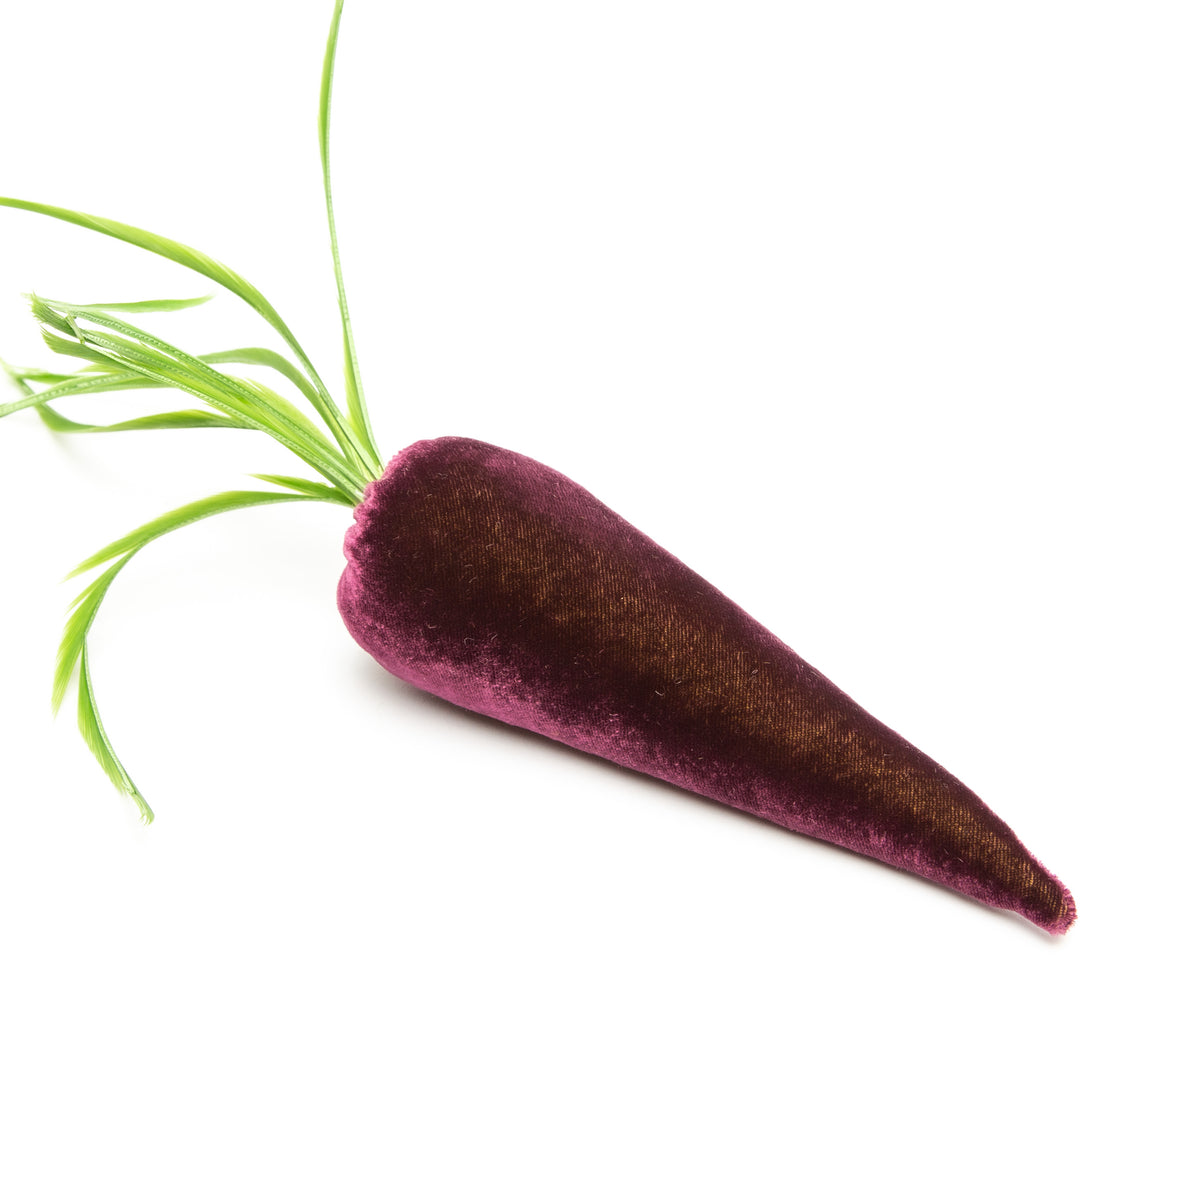 Carrot- Eggplant